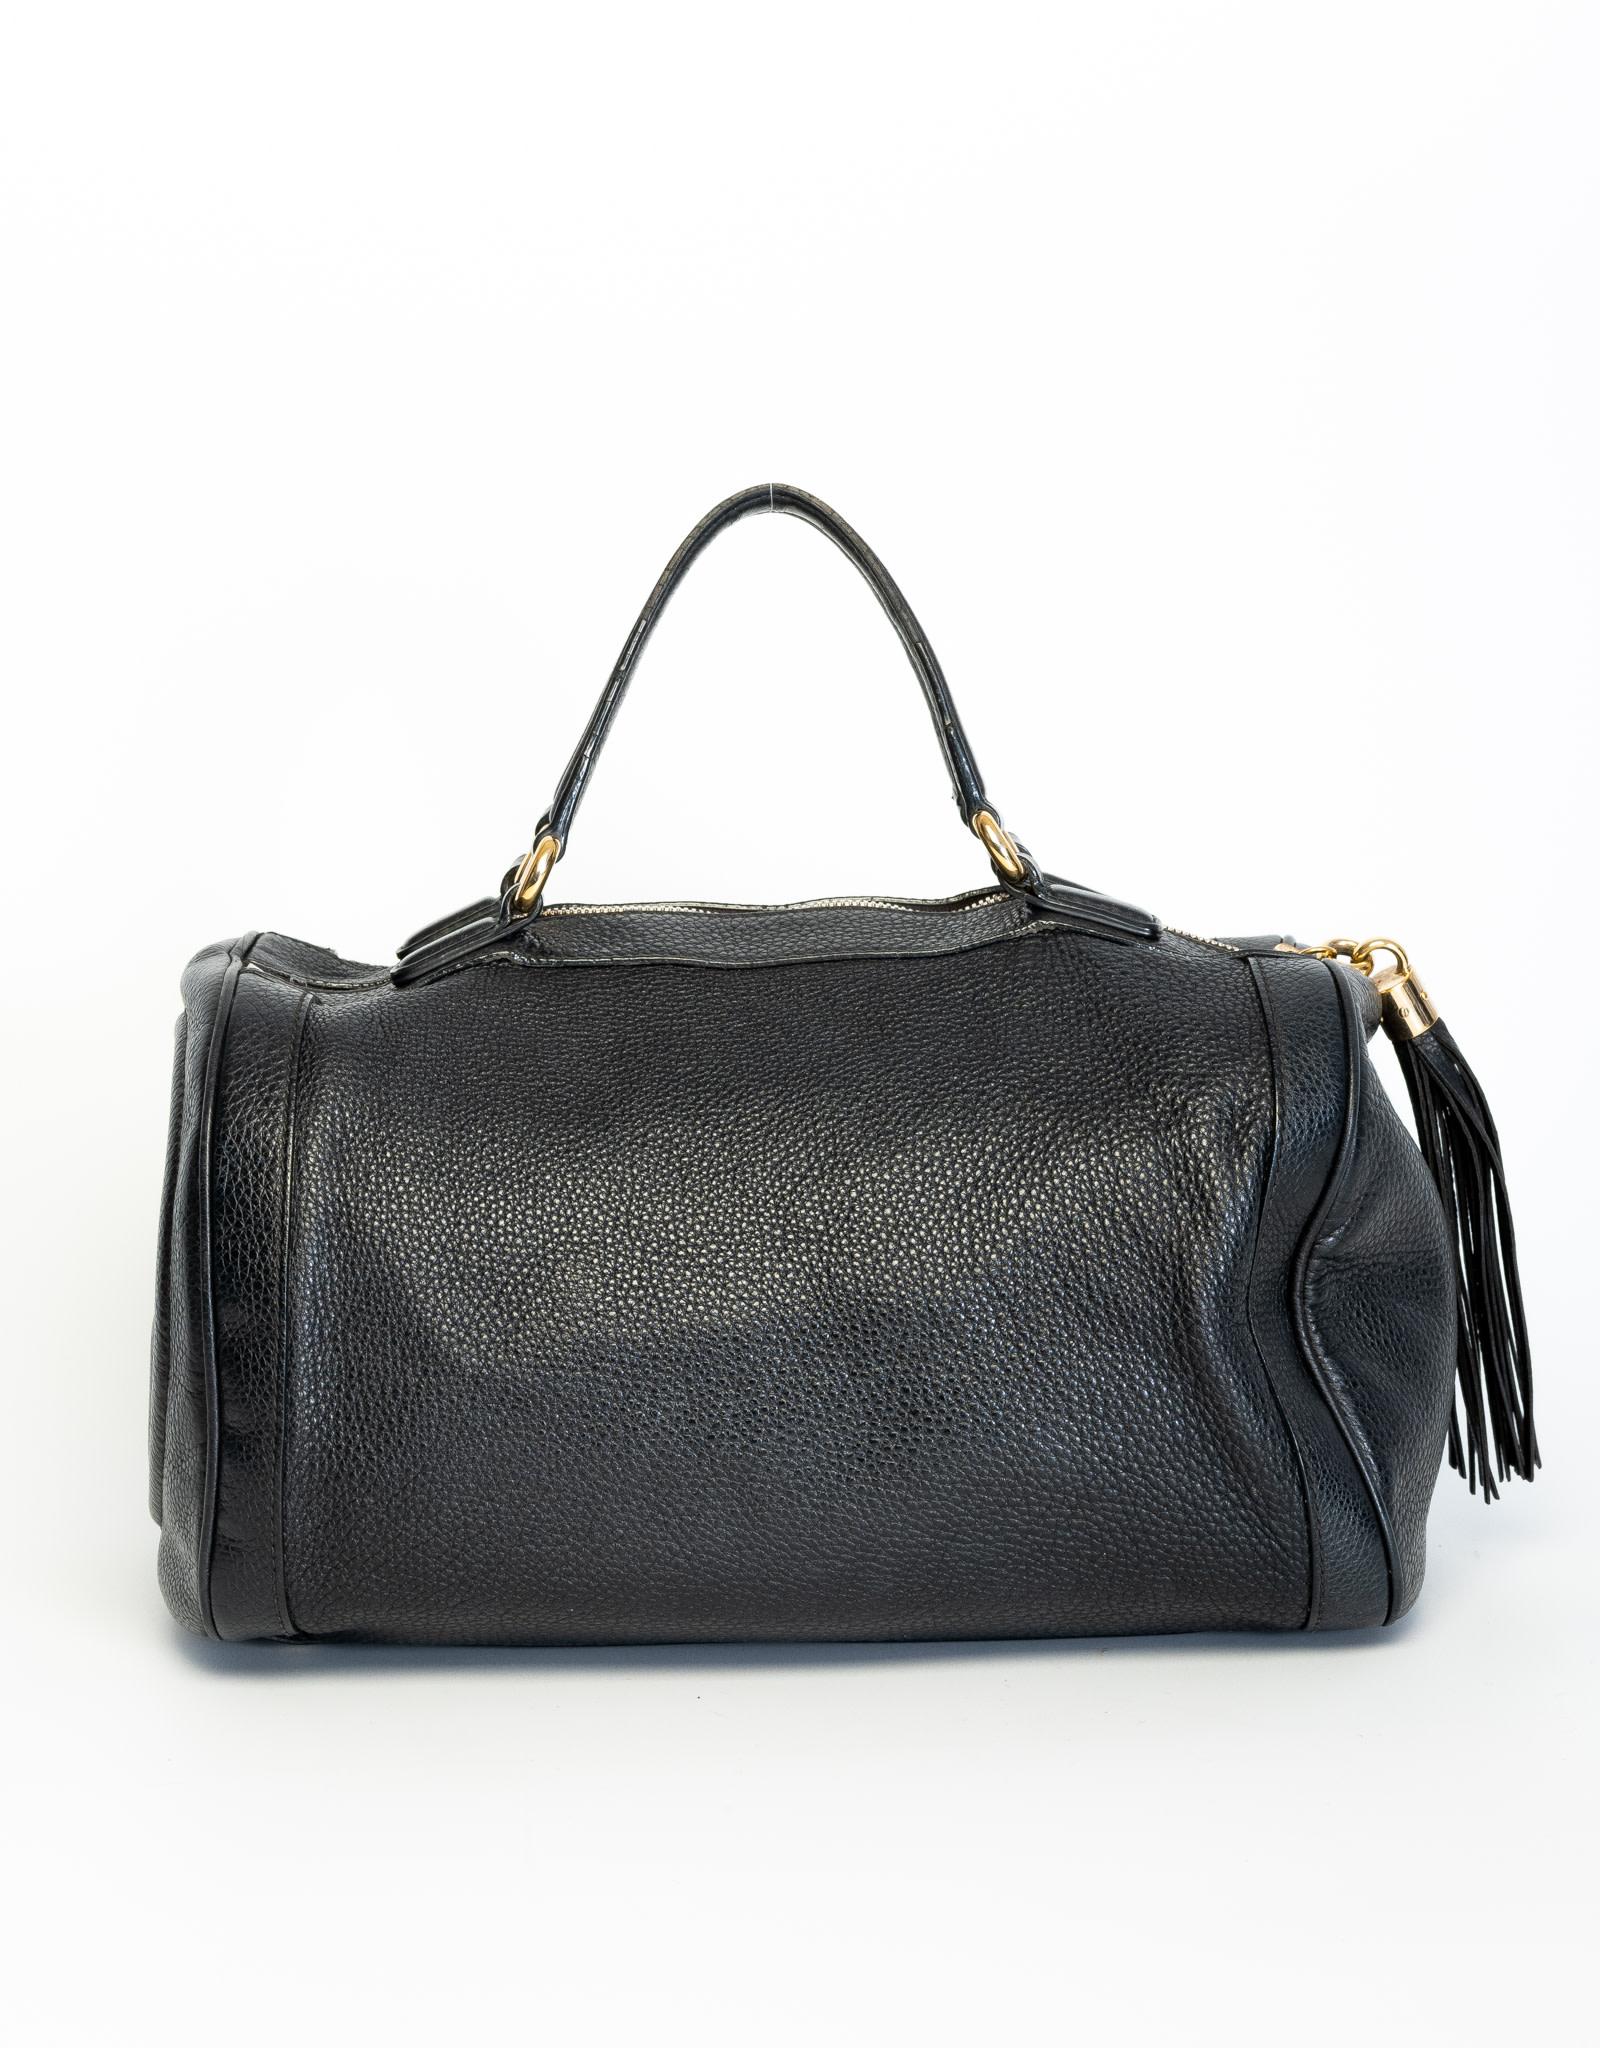 Ce sac à main Gucci est réalisé en cuir texturé noir et orné d'une broderie GG imbriquée sur un côté. Il est doté de poignées supérieures en cuir, d'une fermeture éclair à pompon en cuir et d'une doublure intérieure en tissu.

COULEUR :